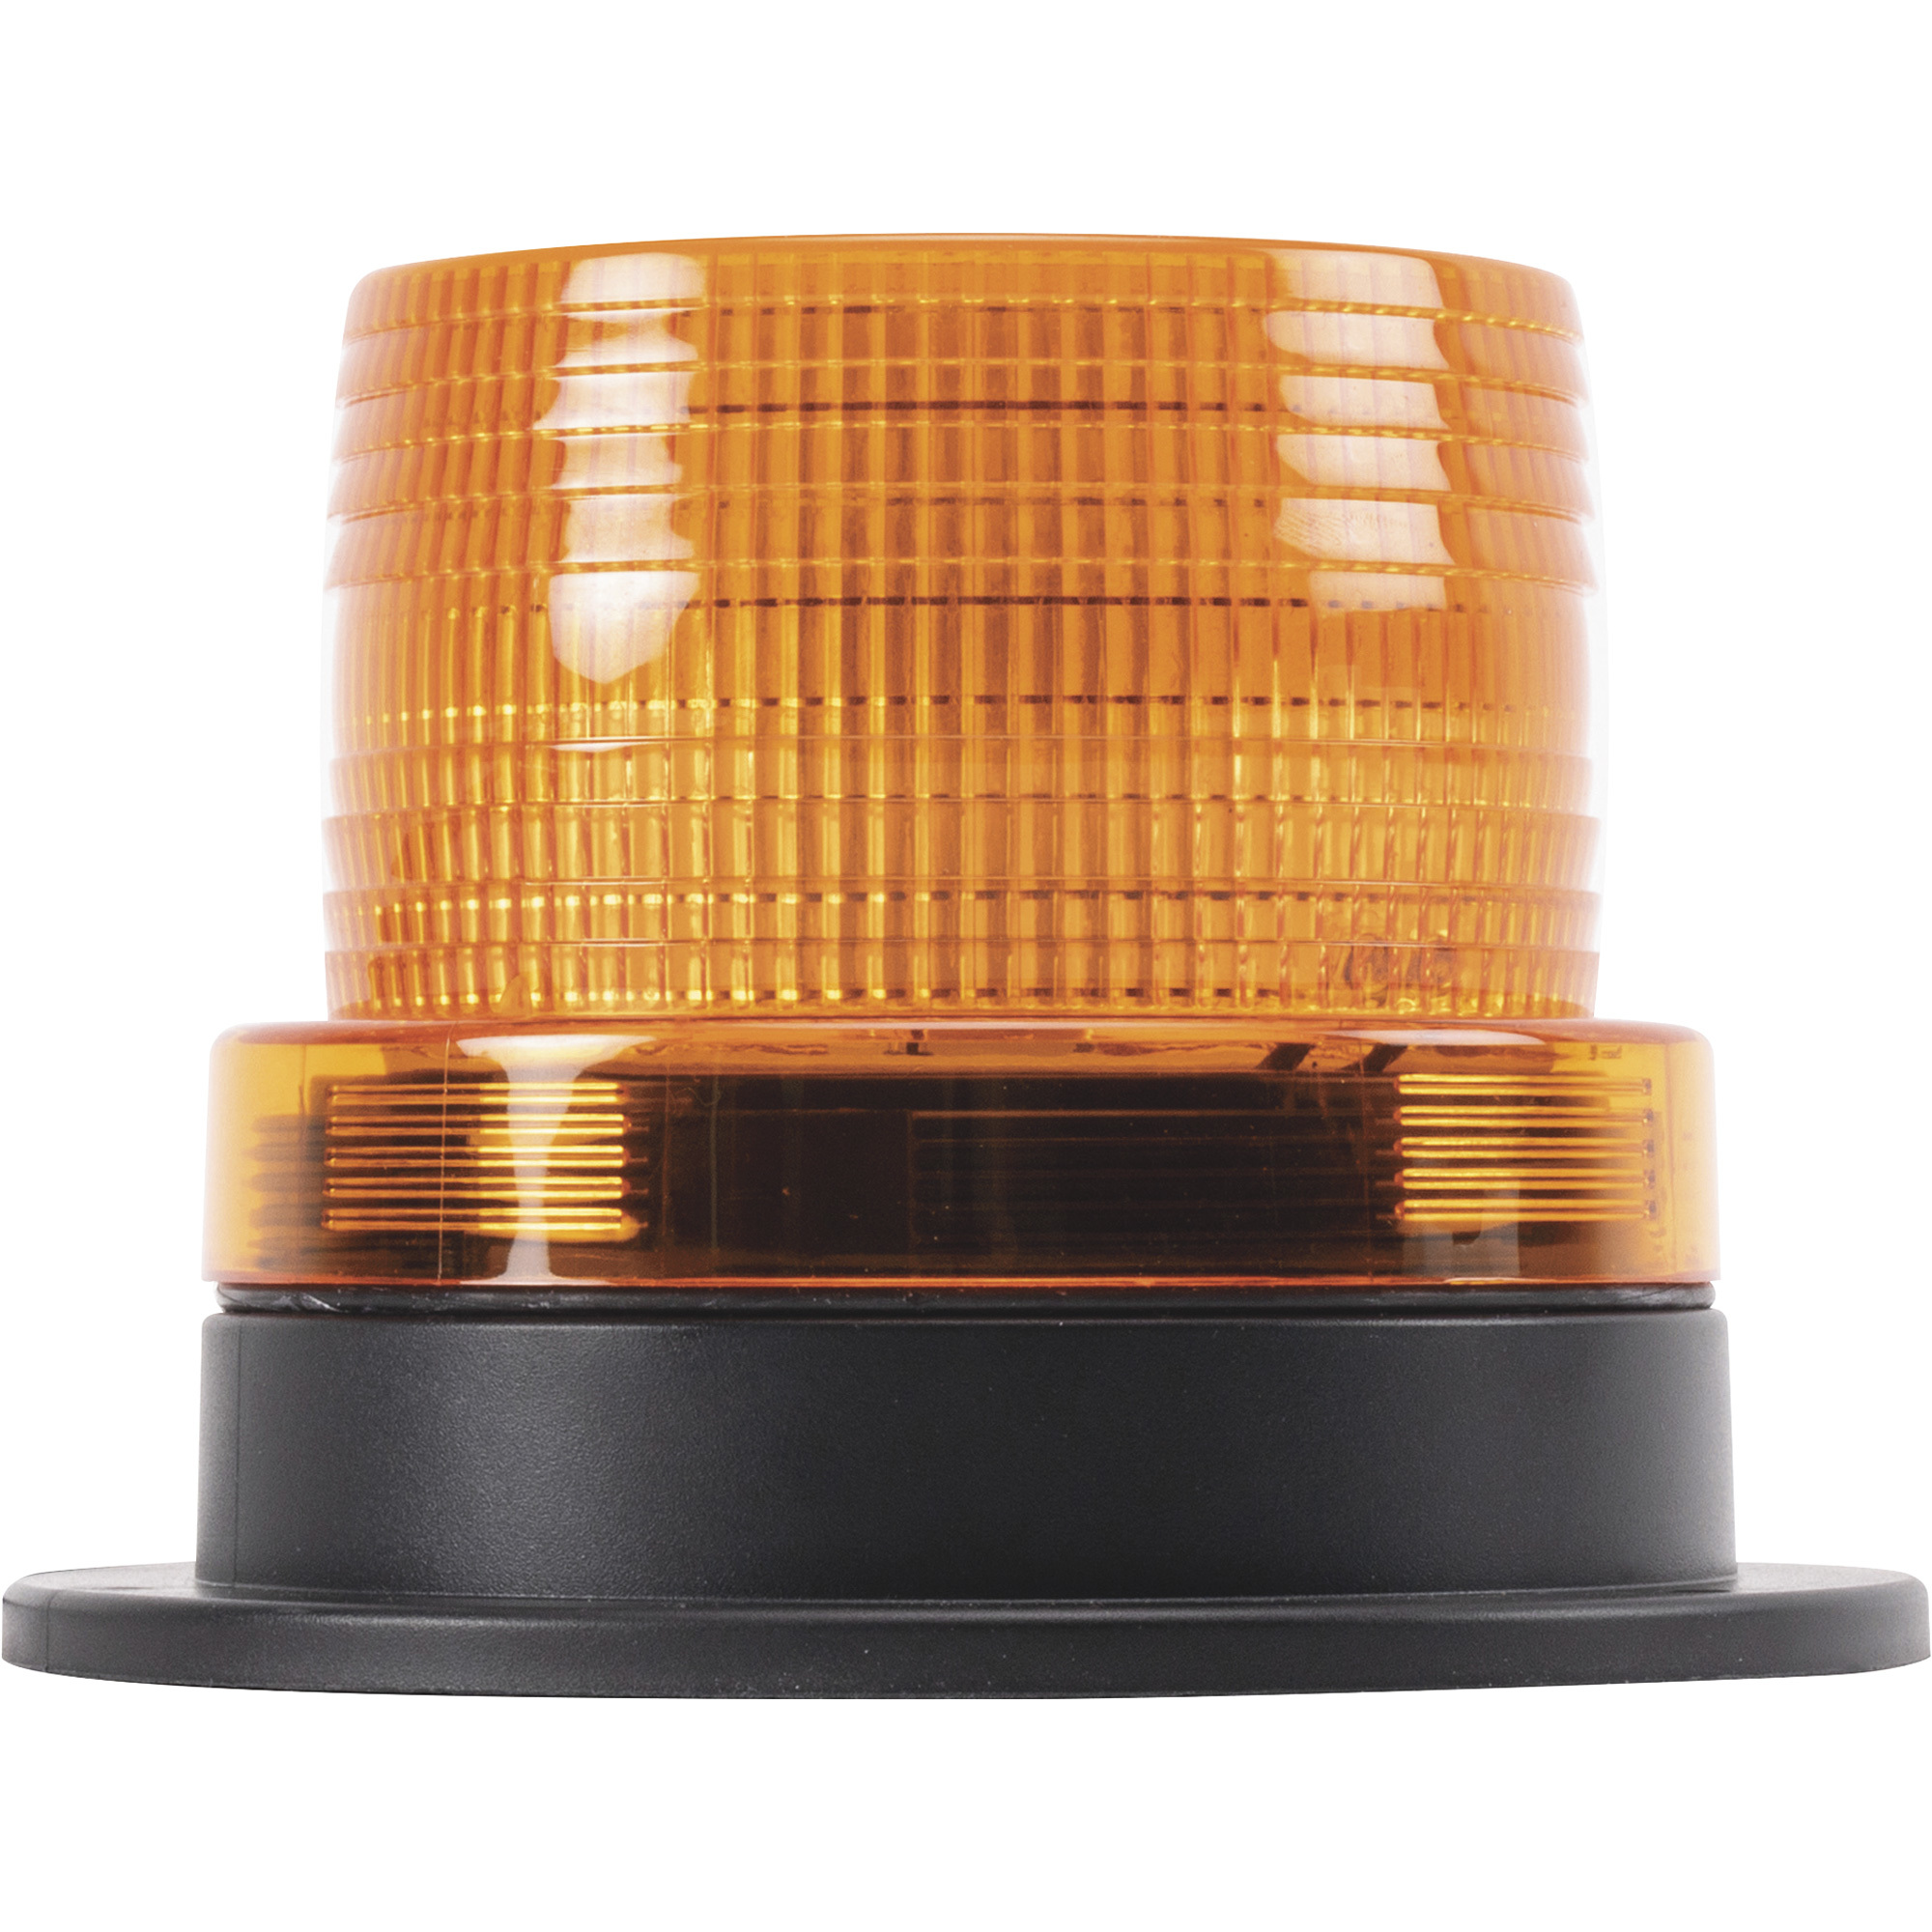 Blazer LED Strobe Class 3 Beacon Warning Light, 36 LEDs, 12V, Amber, Magnetic Mount, Model C48AW